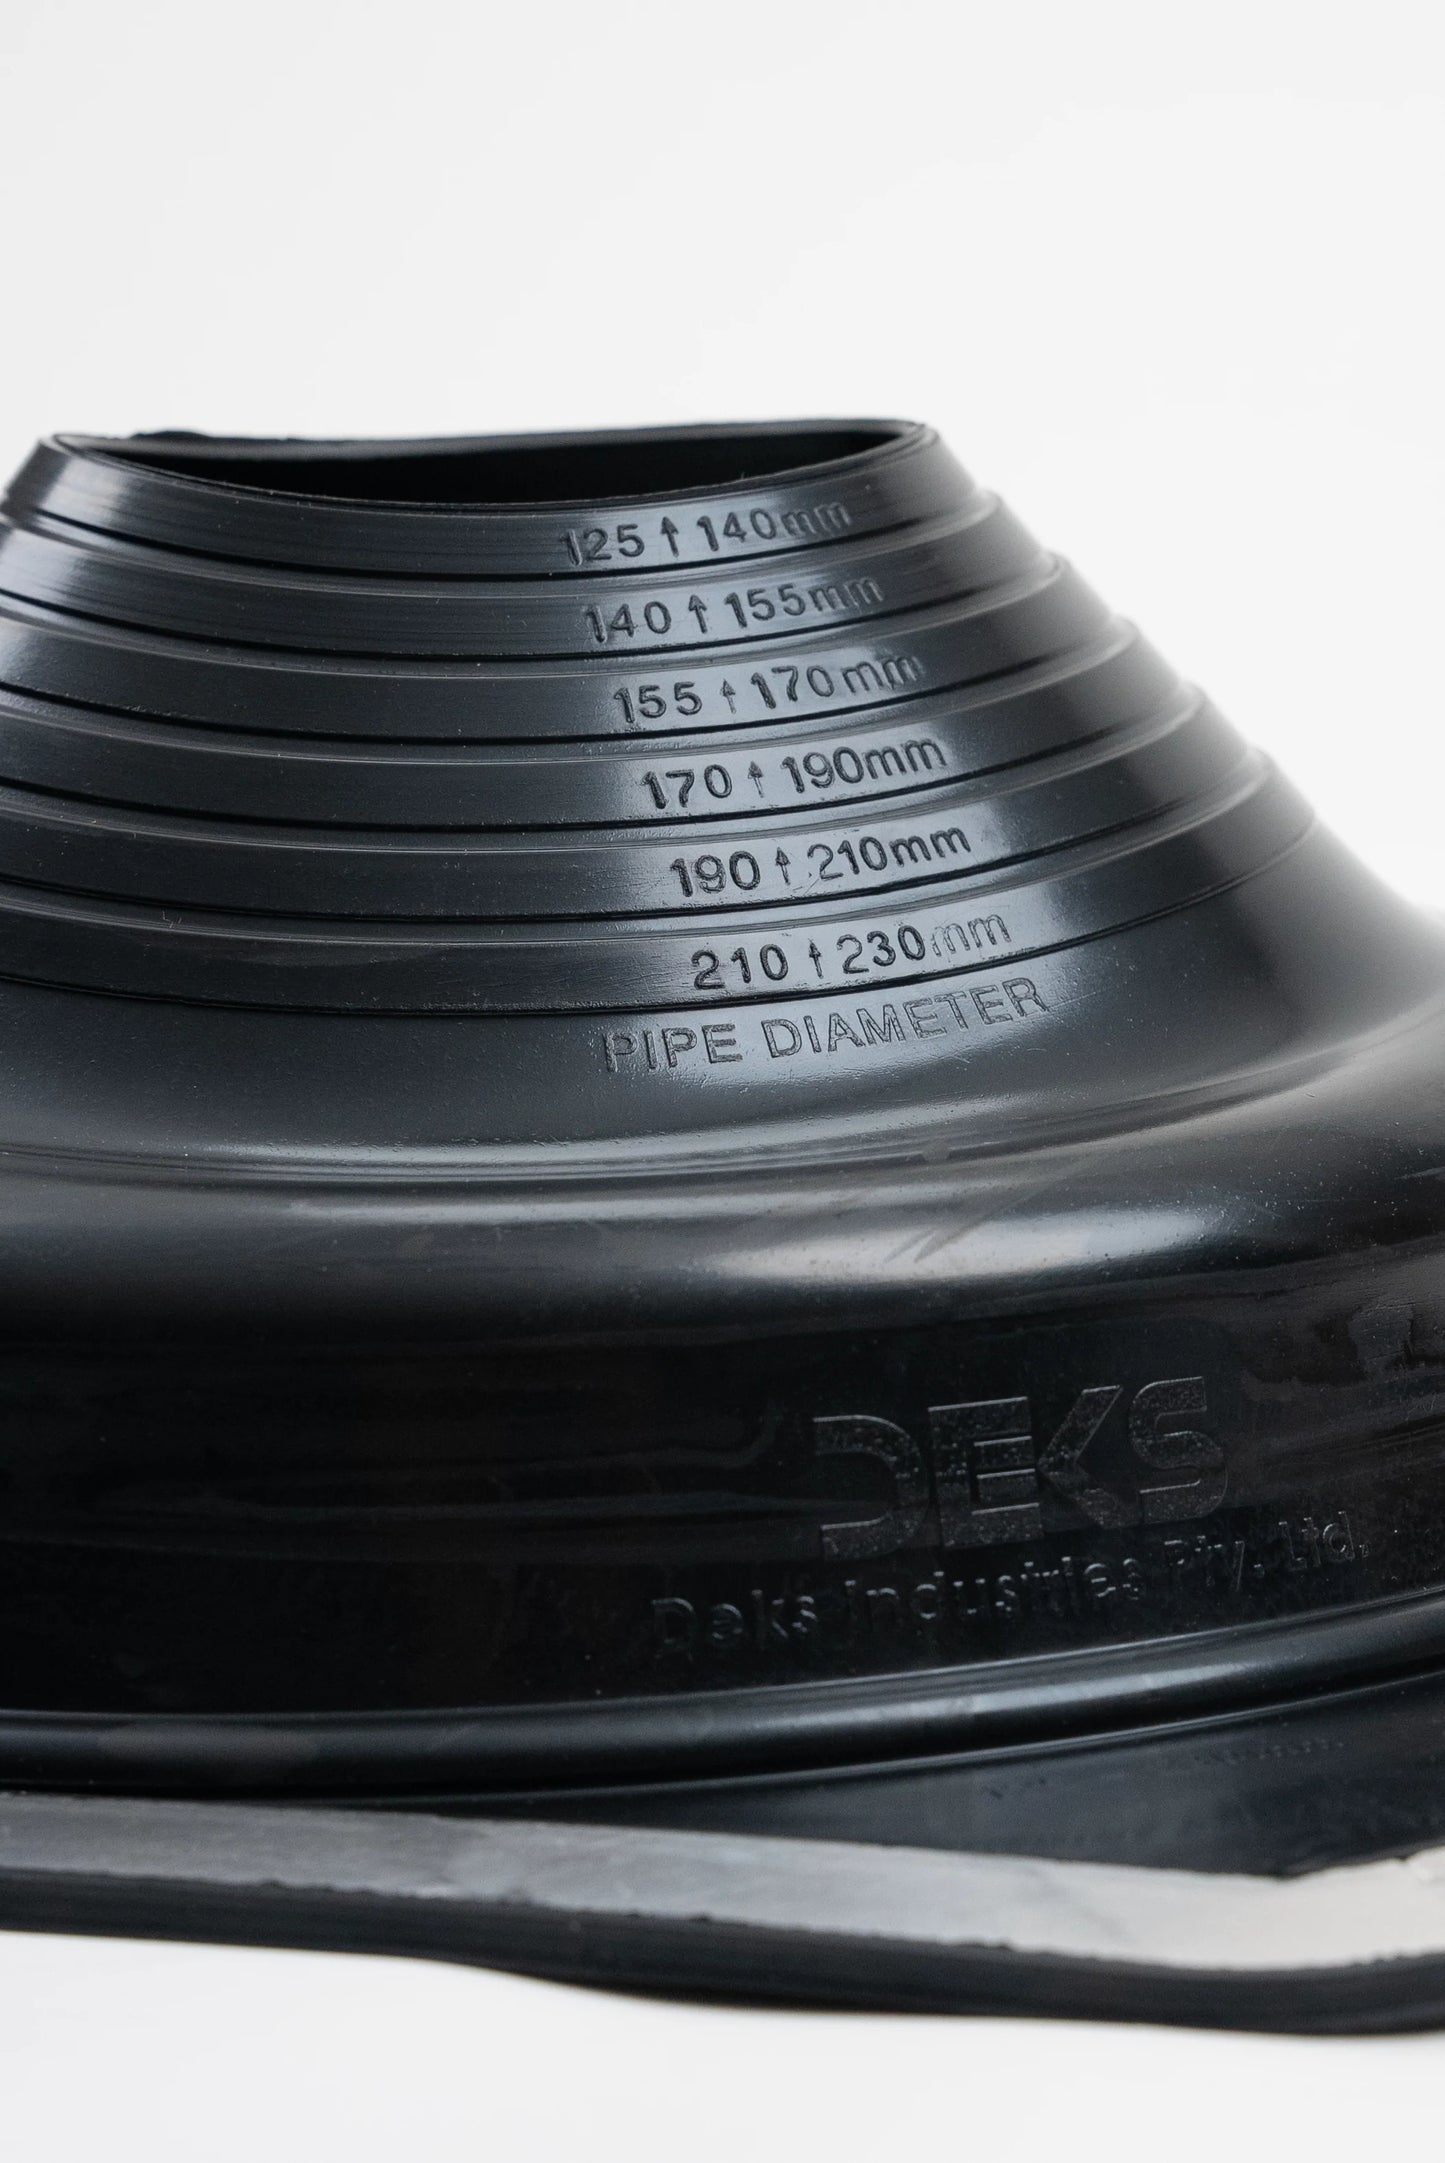 Dektite Premium Rubber Roof Flashing 125-230mm Black EPDM (DFE106B)